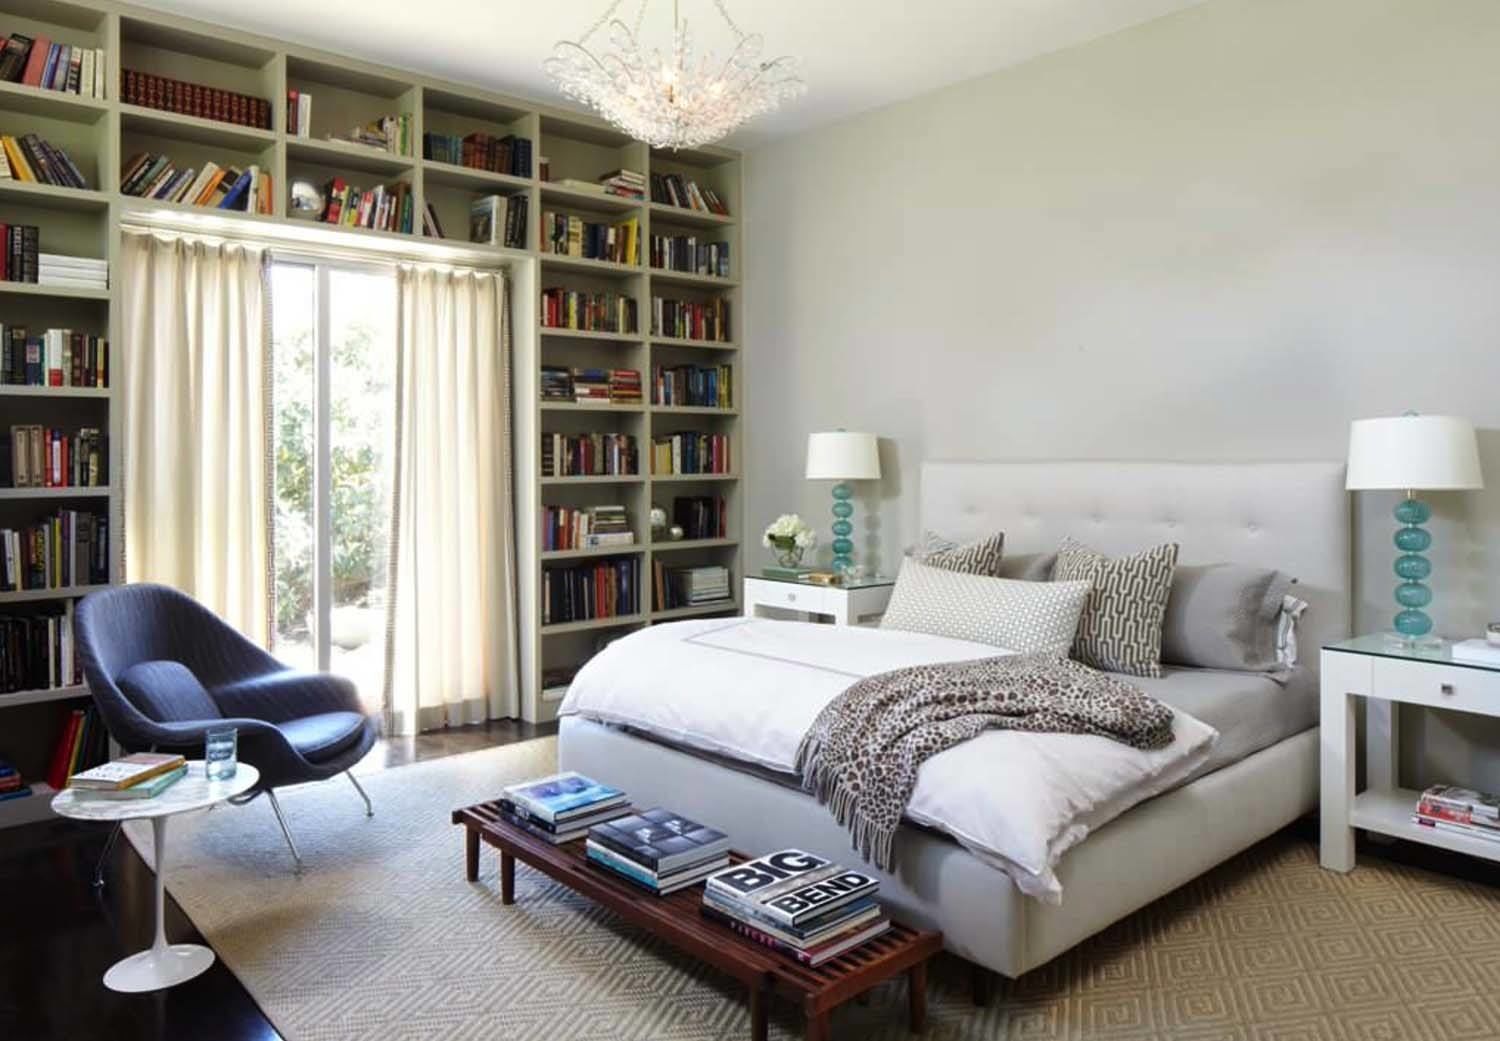 Hài hòa giữa không gian đọc sách và không gian nghỉ ngơi, ý tượng tuyệt vời